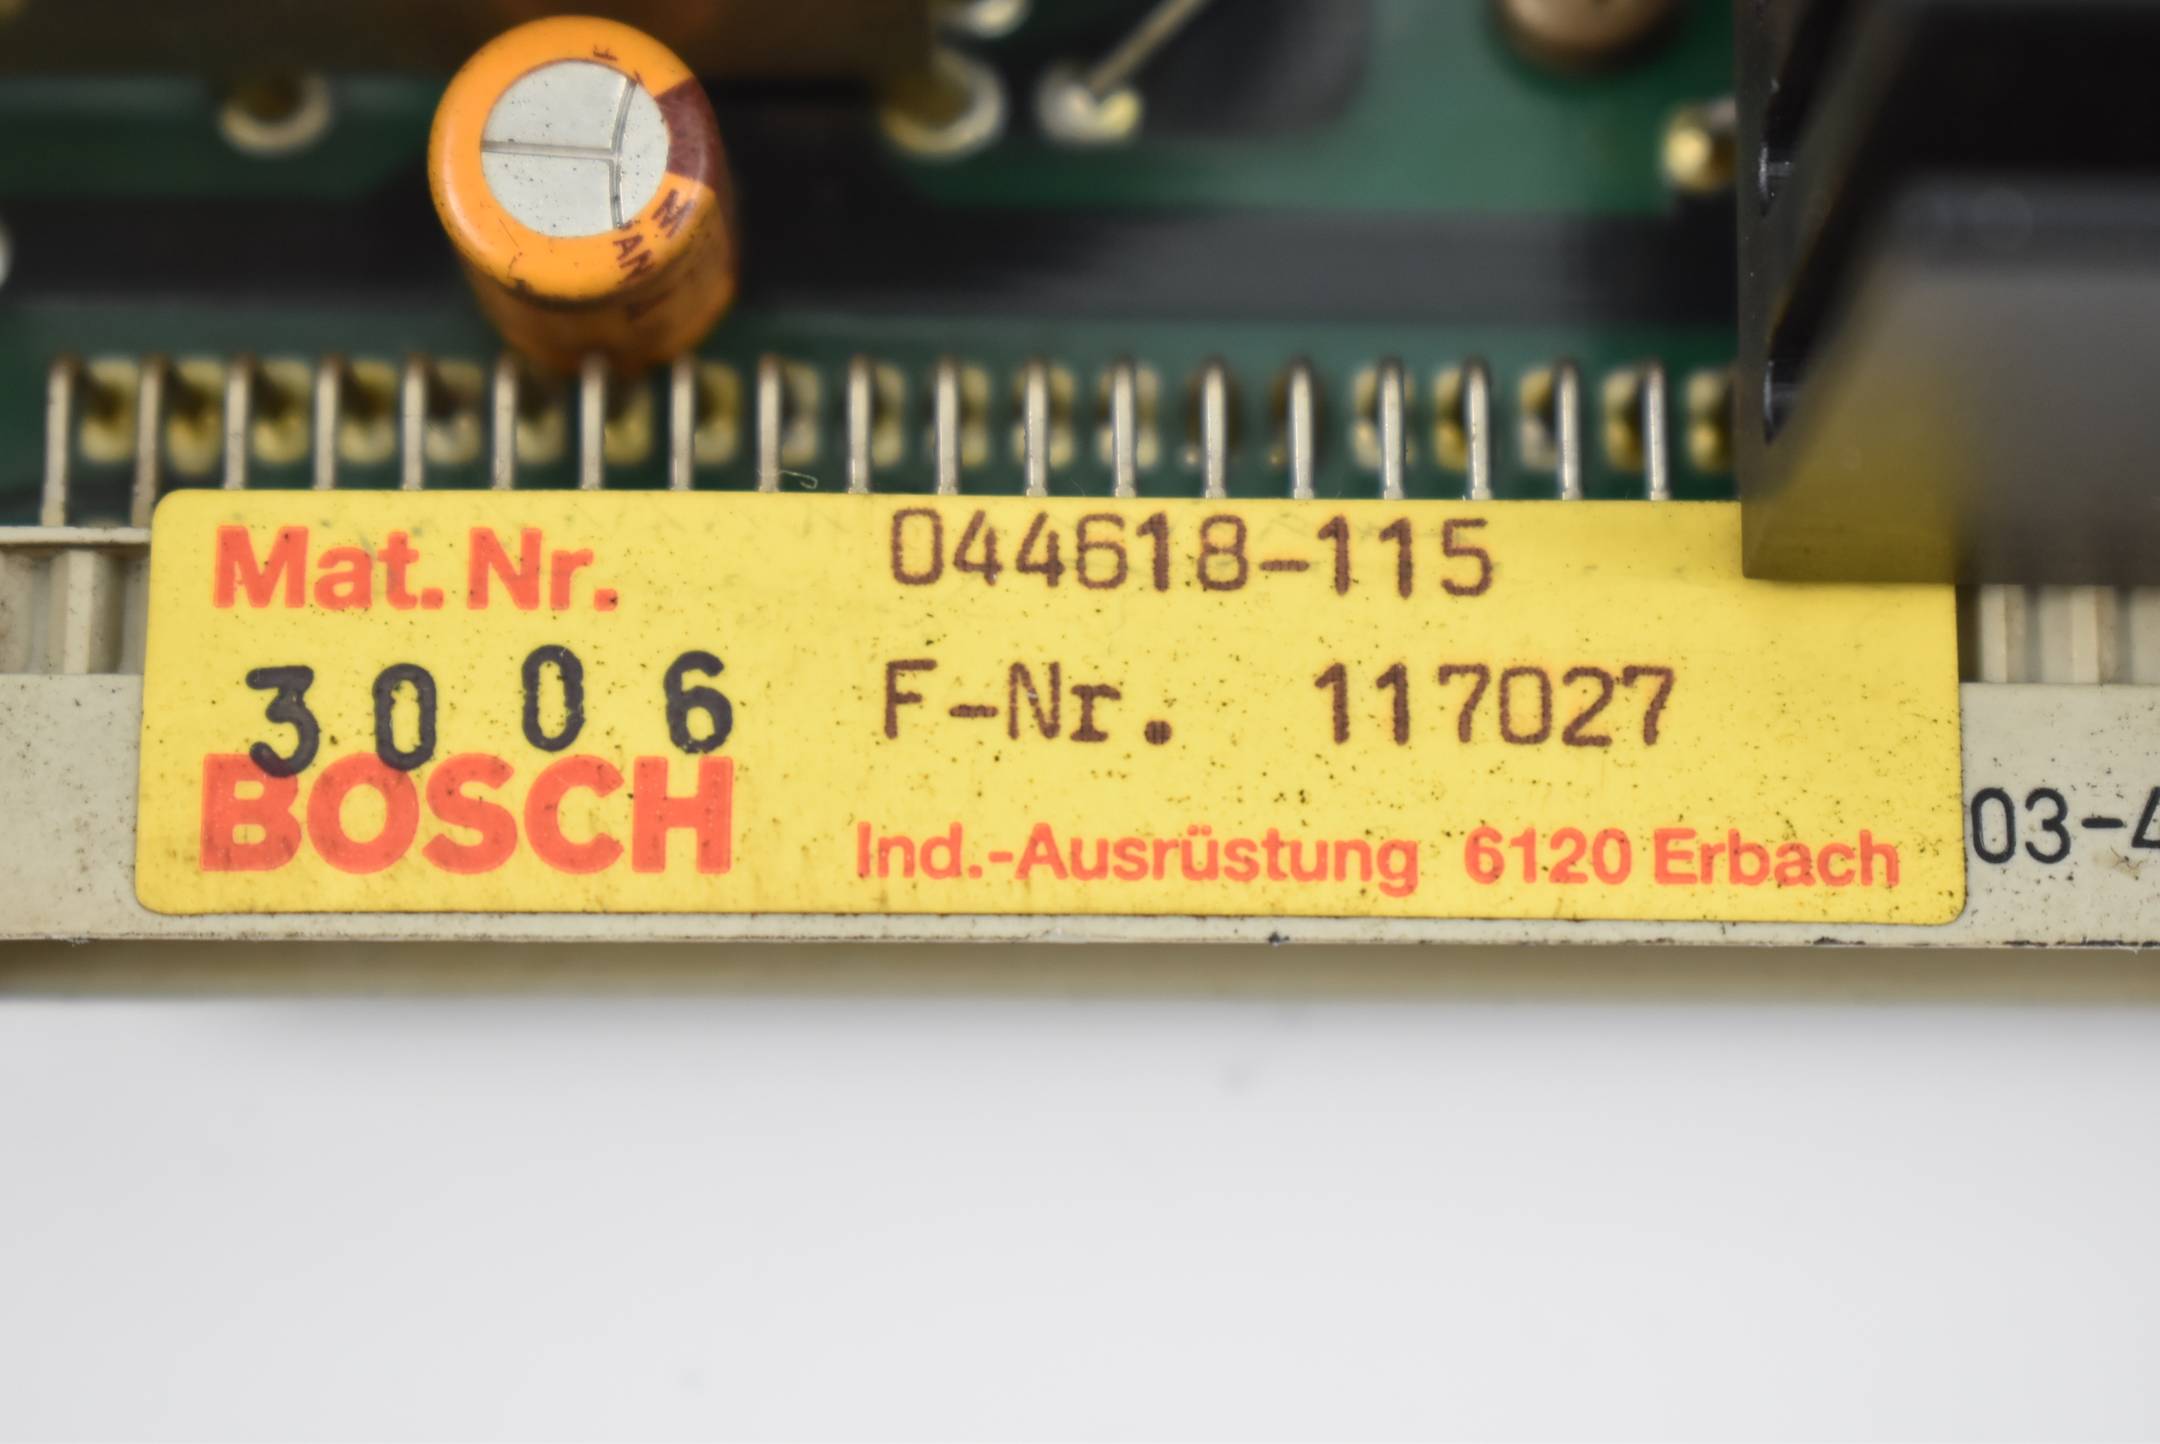 Bosch NT600 Stromversorgung 044618-115